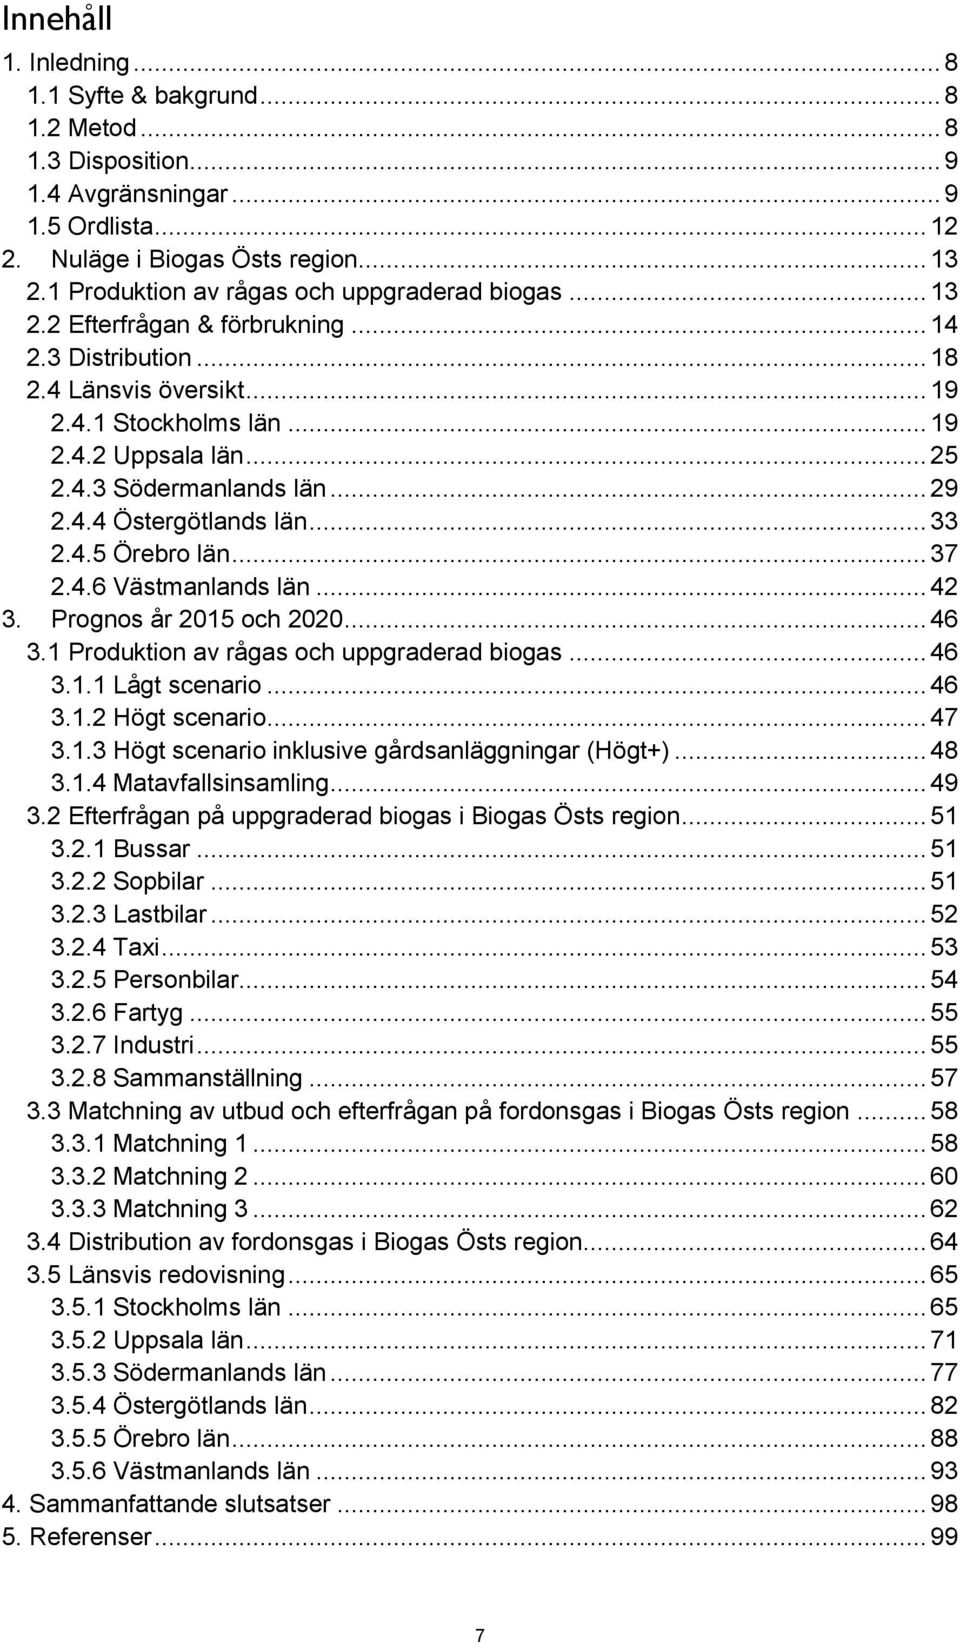 .. 29 2.4.4 Östergötlands län... 33 2.4.5 Örebro län... 37 2.4.6 Västmanlands län... 42 3. Prognos år 2015 och 2020... 46 3.1 Produktion av rågas och uppgraderad biogas... 46 3.1.1 Lågt scenario.